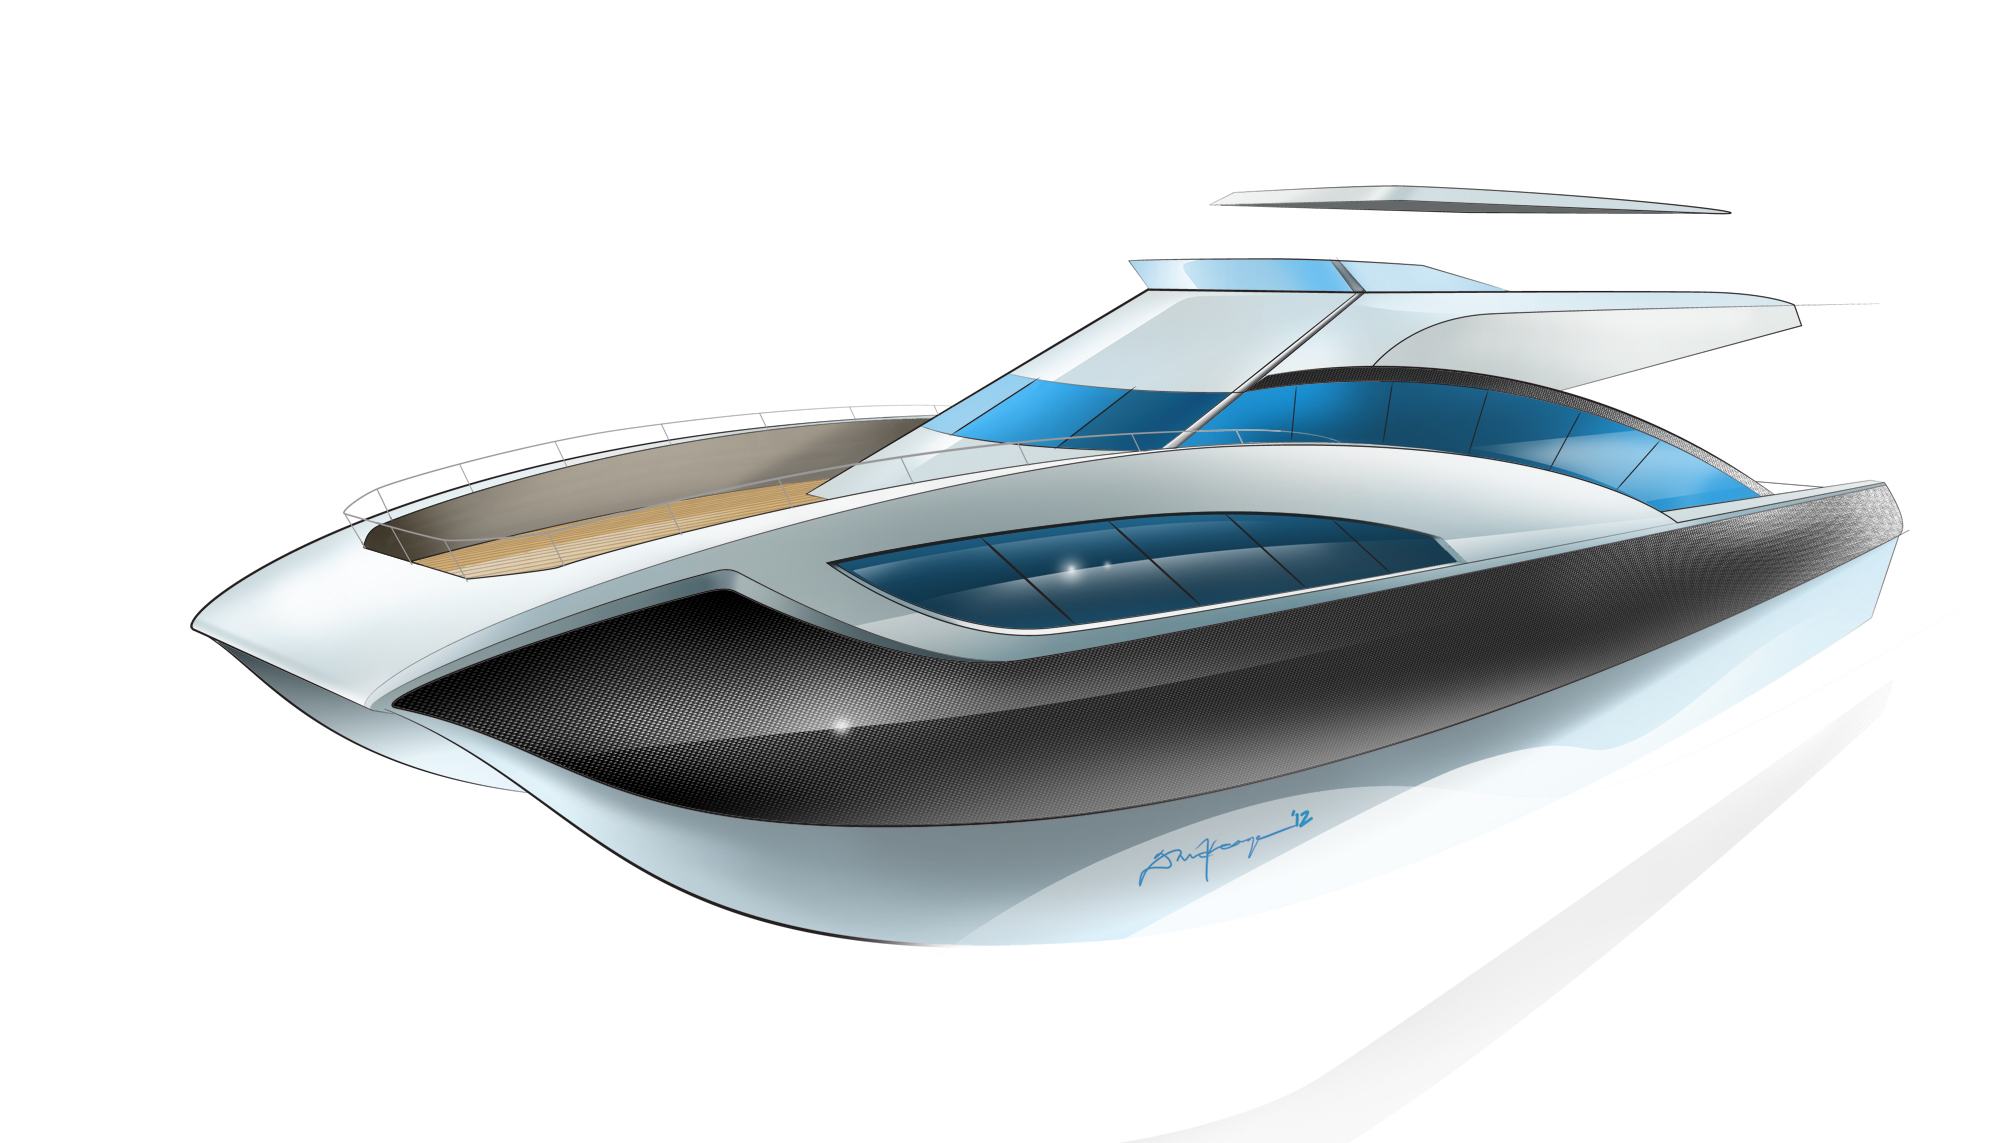 Marine Keage Concepts Calgary Alberta Automotive Design